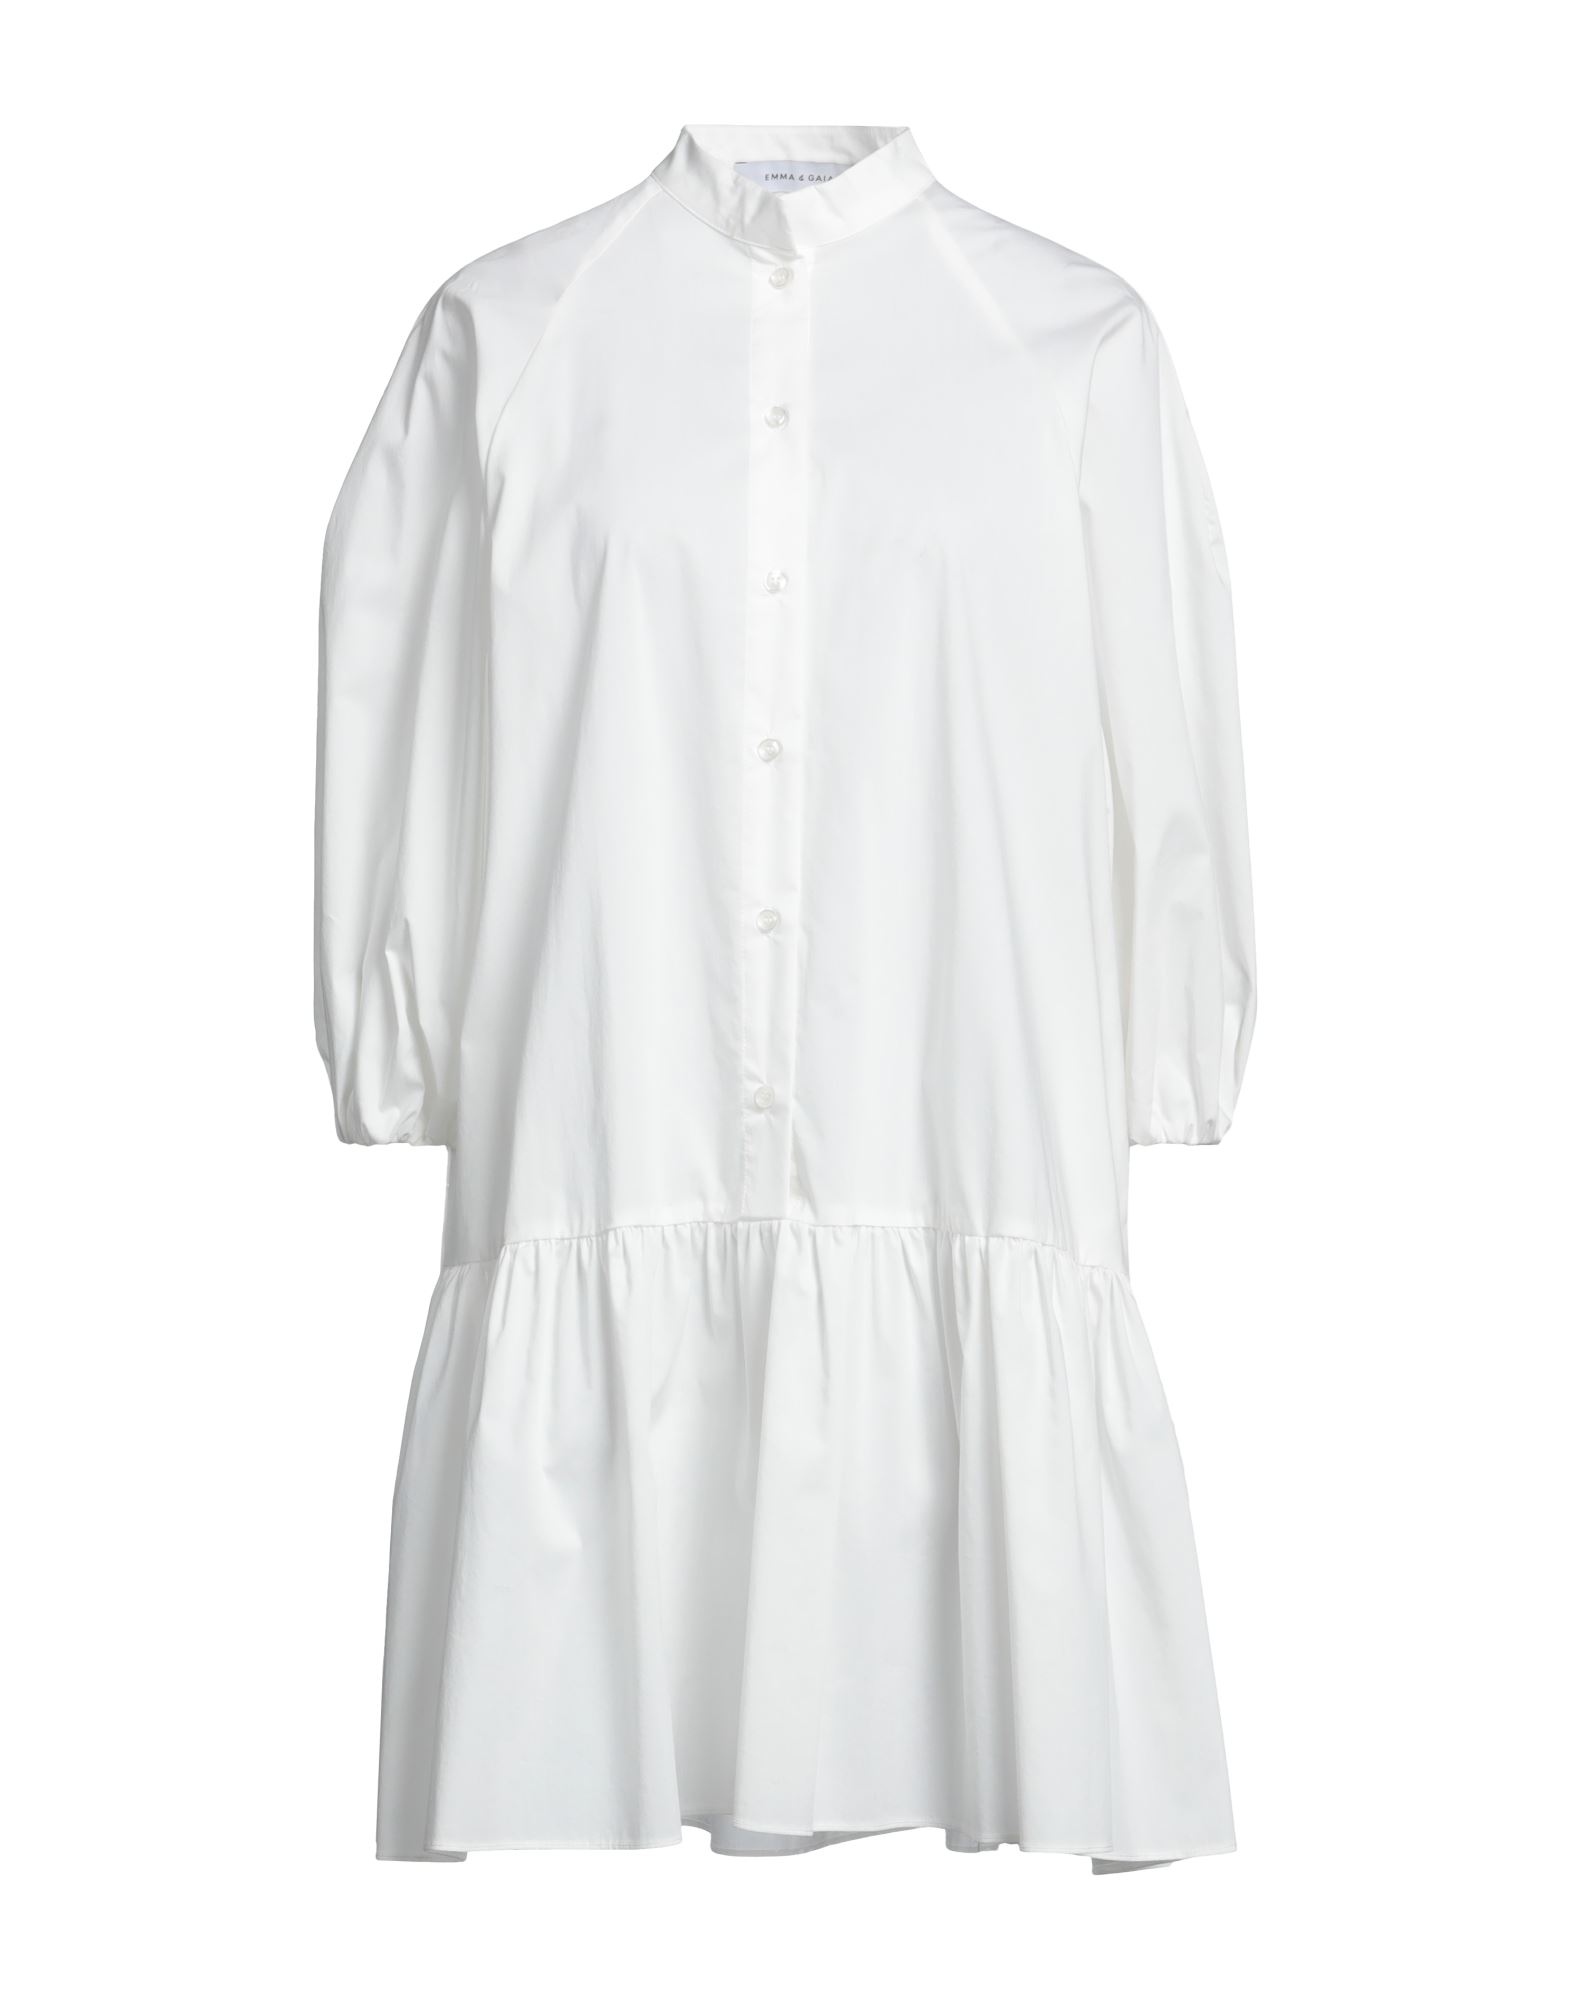 Emma & Gaia Woman Mini Dress White Size 6 Cotton, Polyamide, Elastane